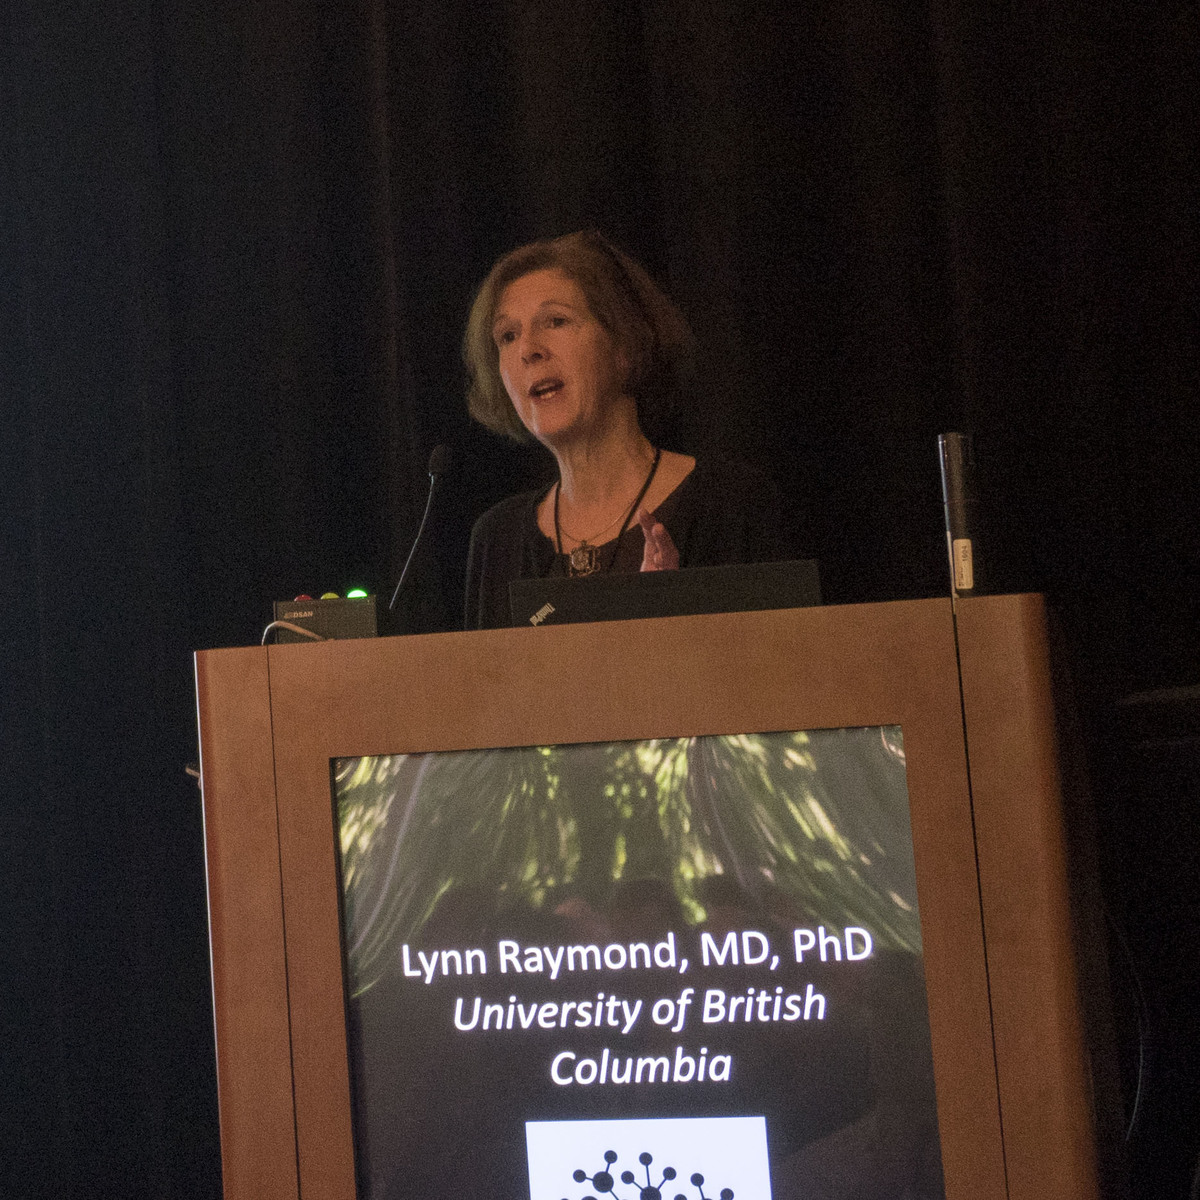 Lynn Raymonds kortikal-striatale co-kultur gir en mulighet for å teste medikamenter for HS  